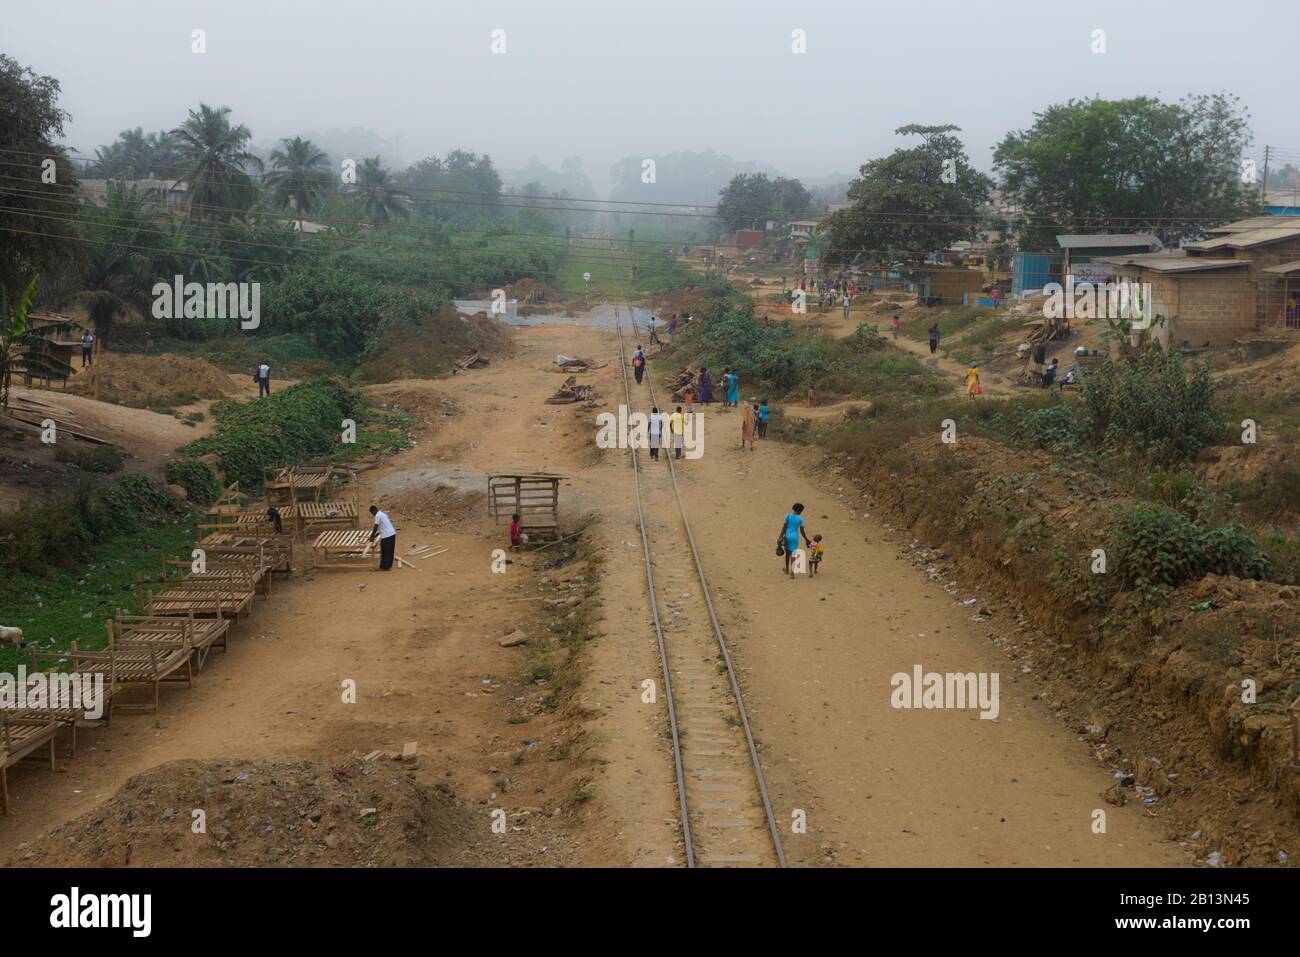 Las vías del ferrocarril, a través de un pueblo en el sur de Ghana Foto de stock